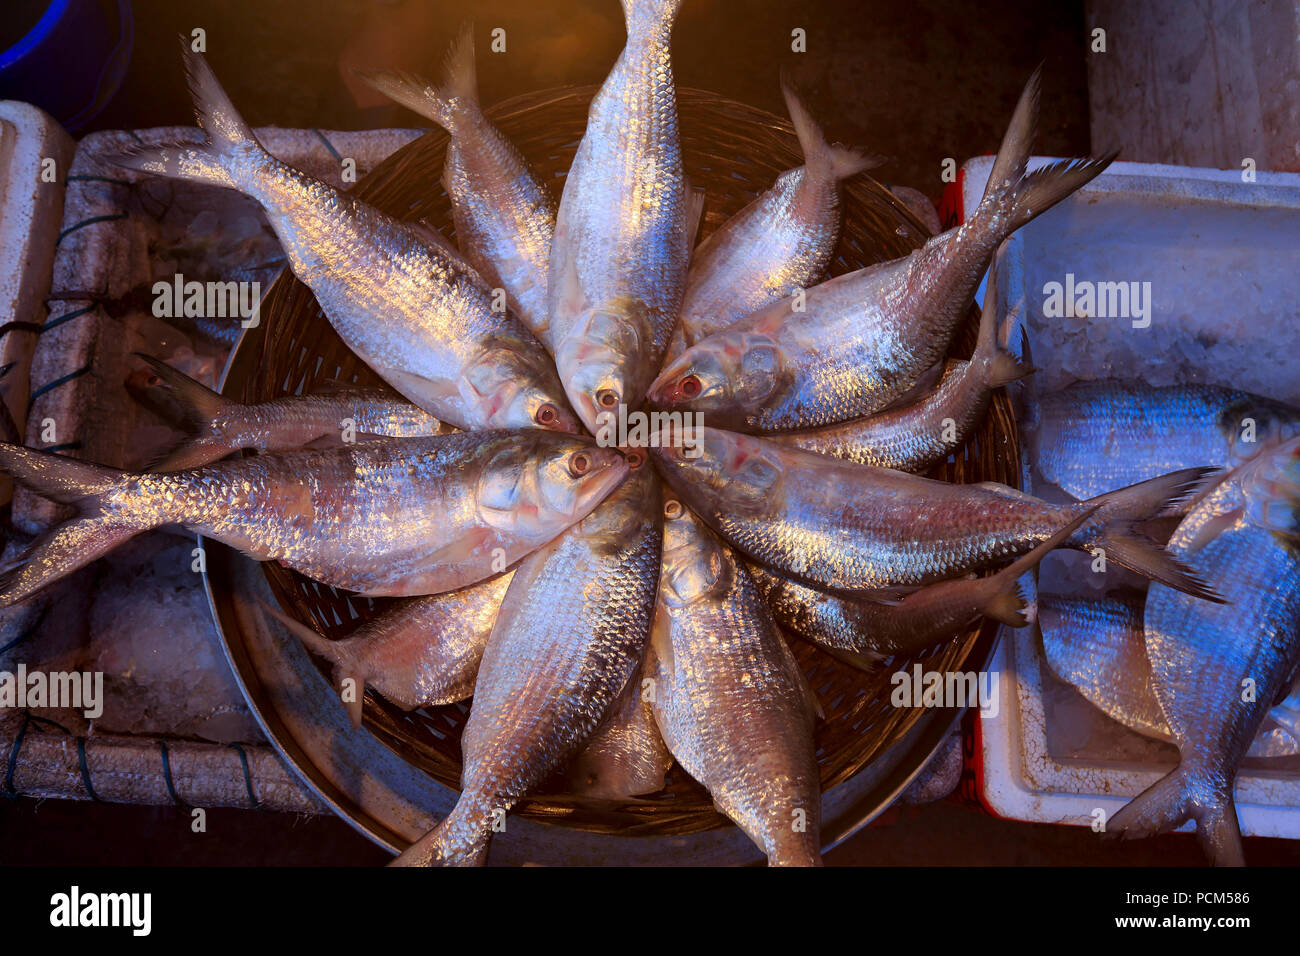 Display of Hilsa fishes at a market in Barisal, Bangladesh. Stock Photo